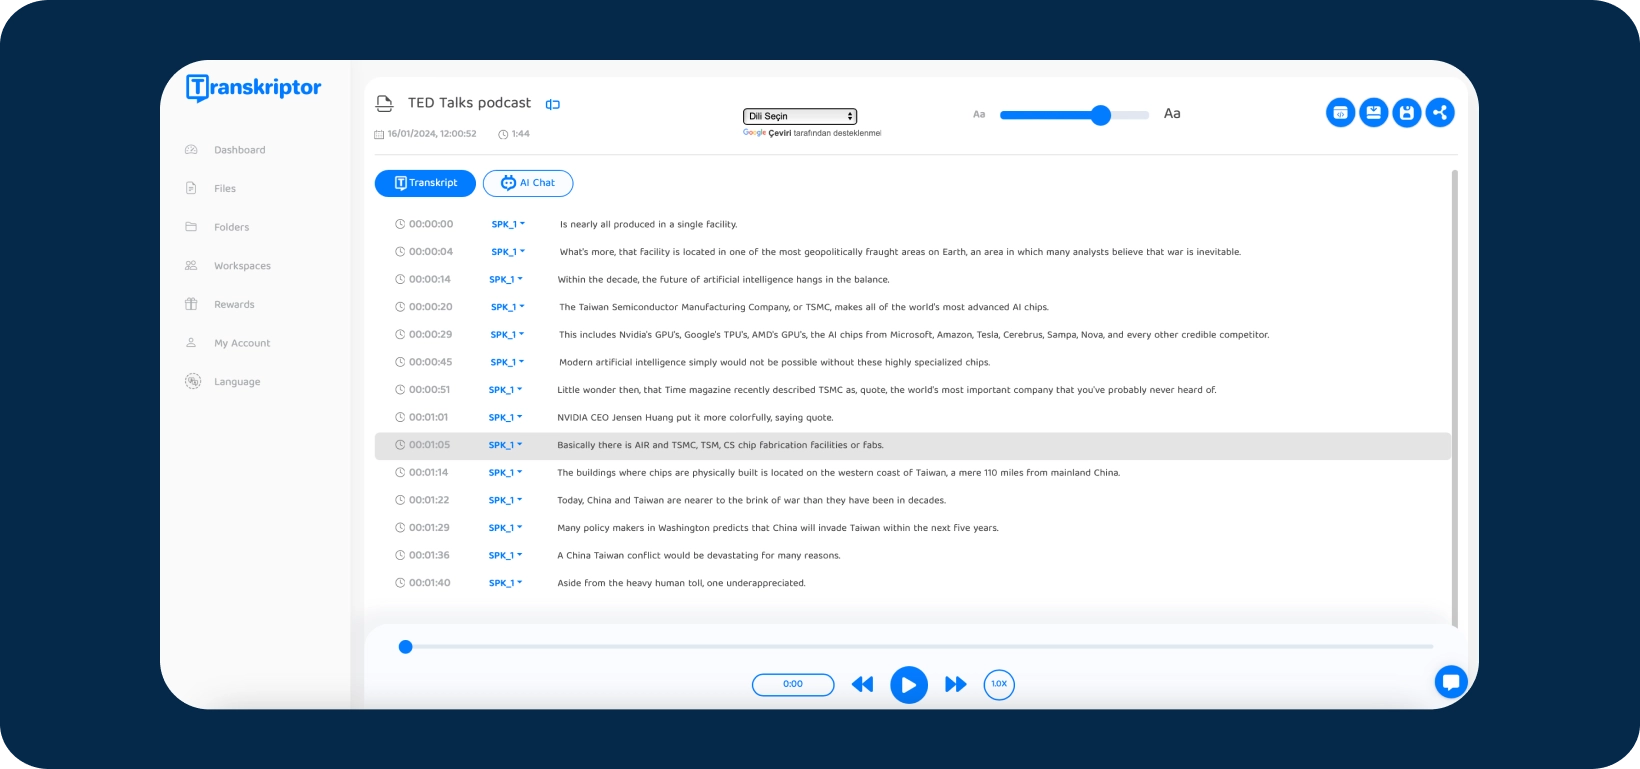 Captura de pantalla de la interfaz de la aplicación Transkriptor que muestra la transcripción de un podcast de TED Talks.